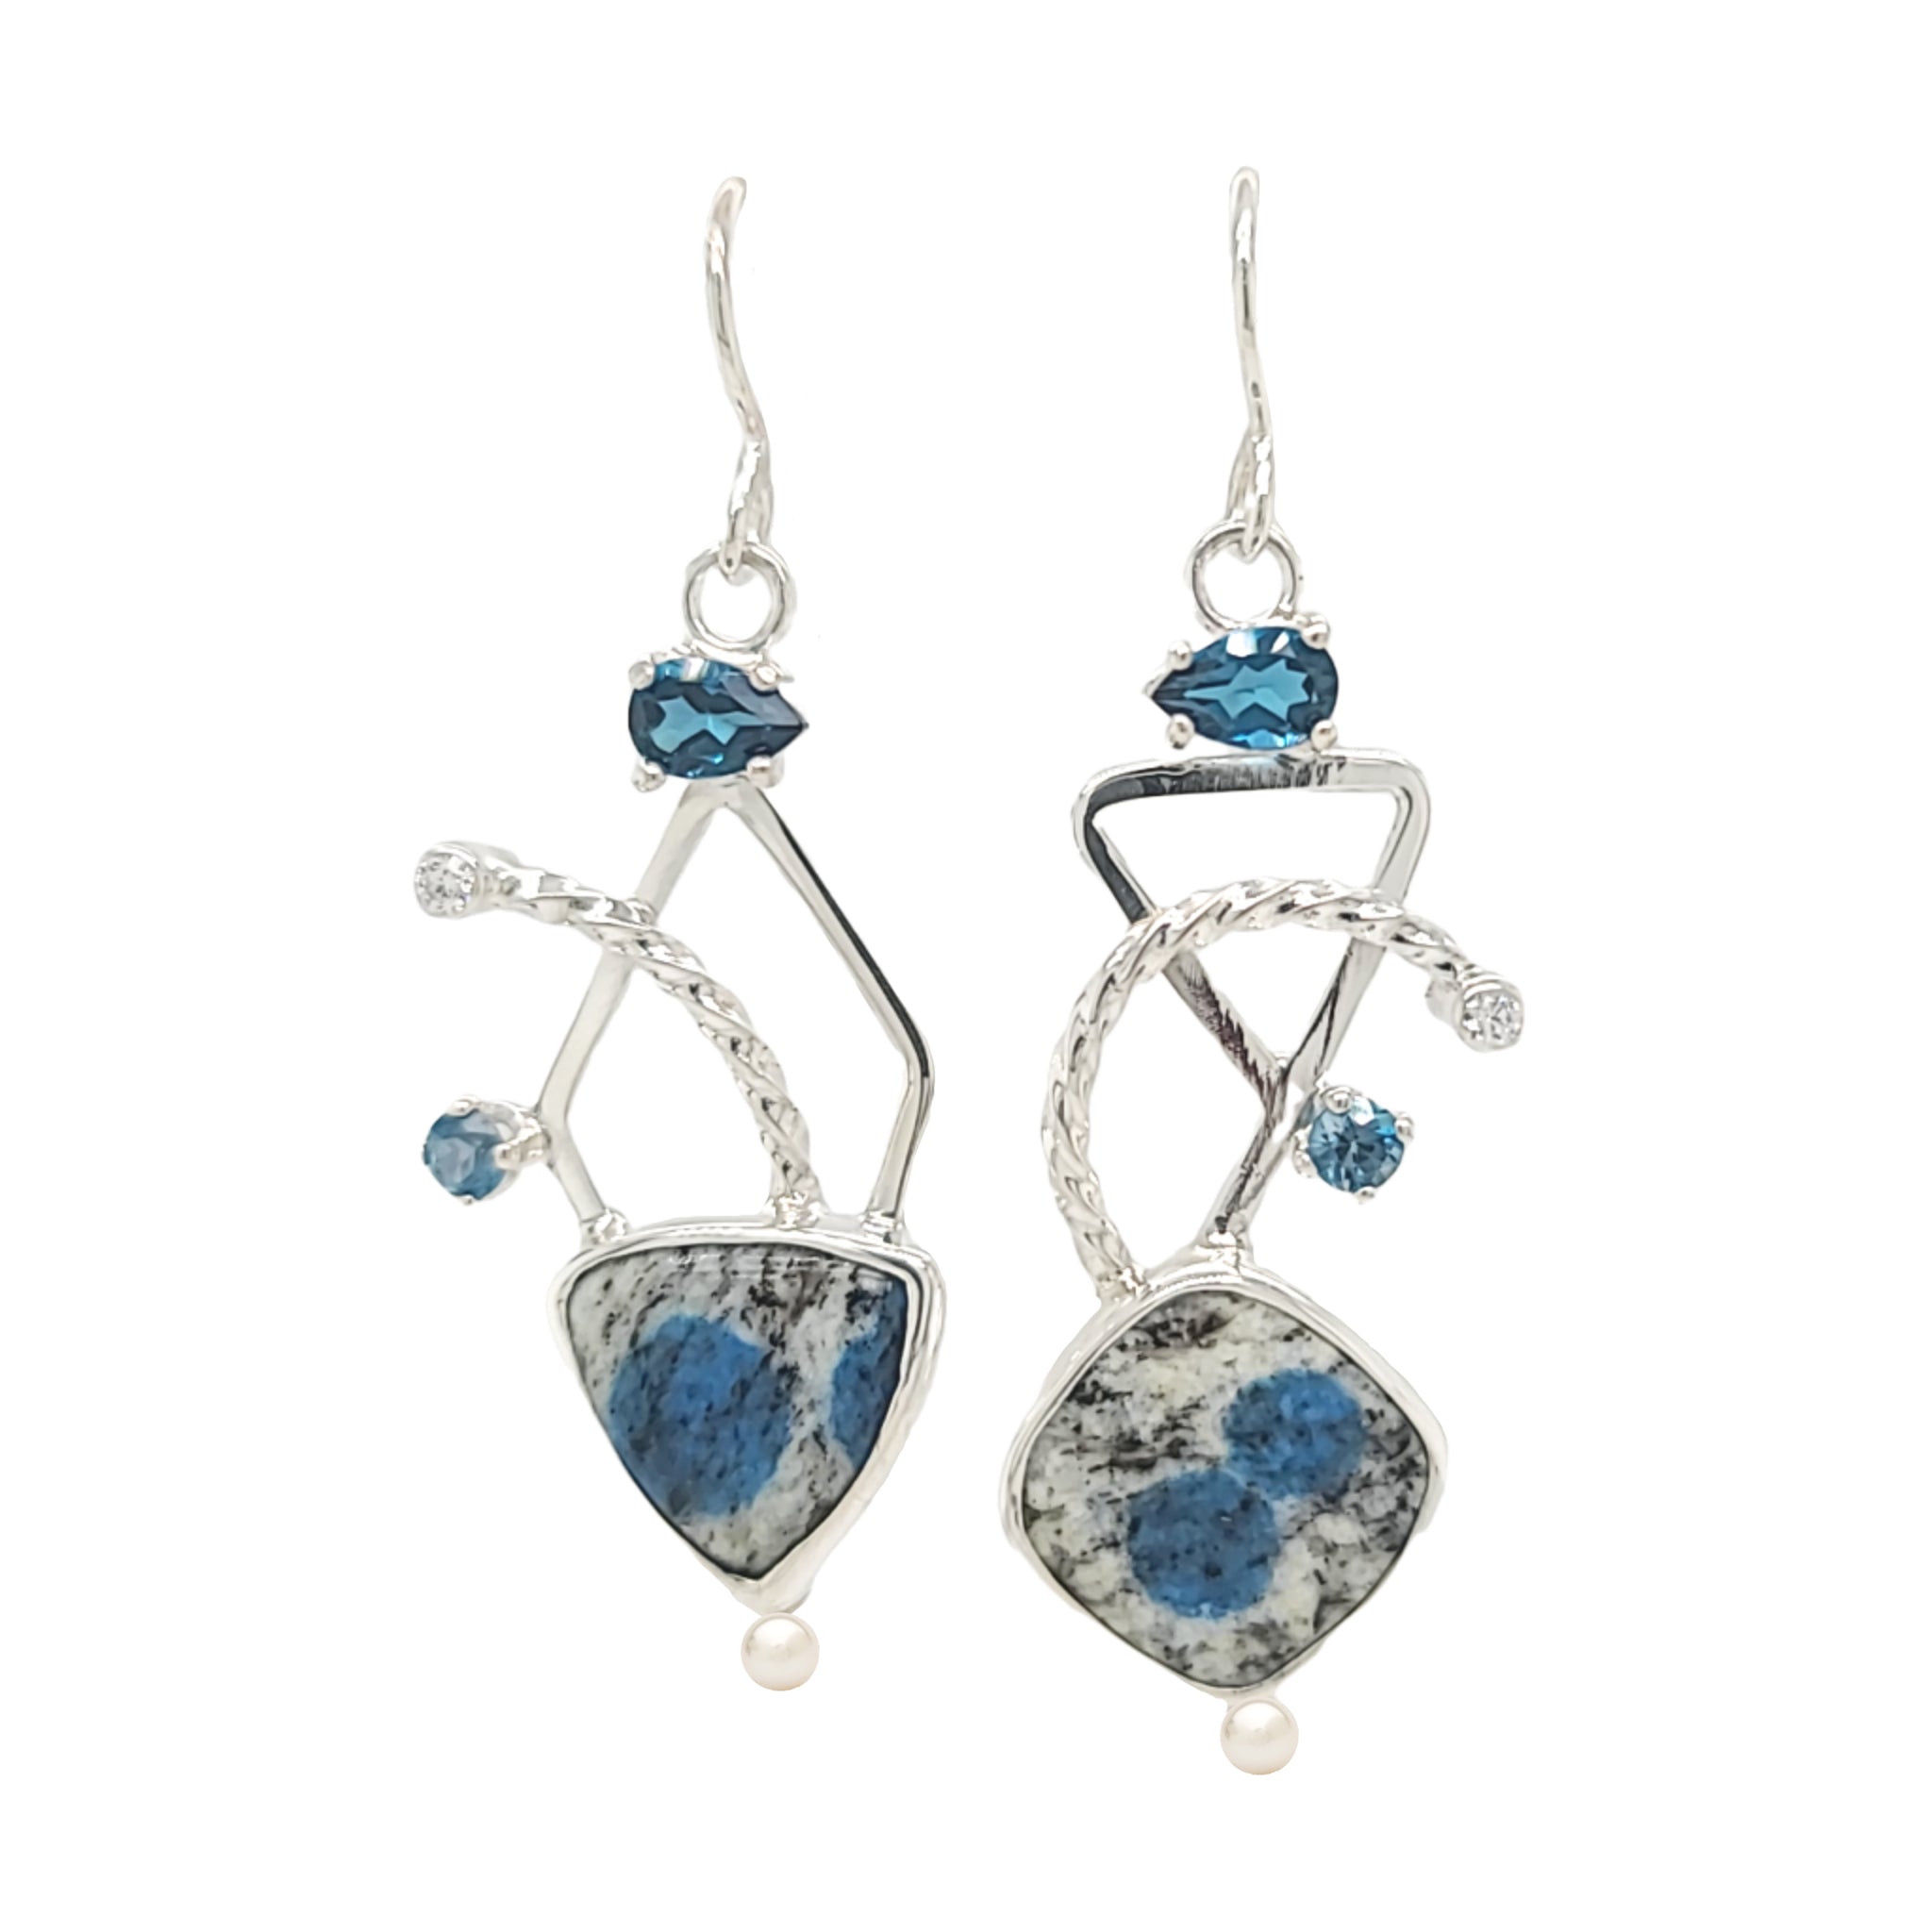 K2 Jasper, London Blue Topaz, Cubic Zirconia and Freshwater Pearl asymmetric earrings set in Sterling Silver